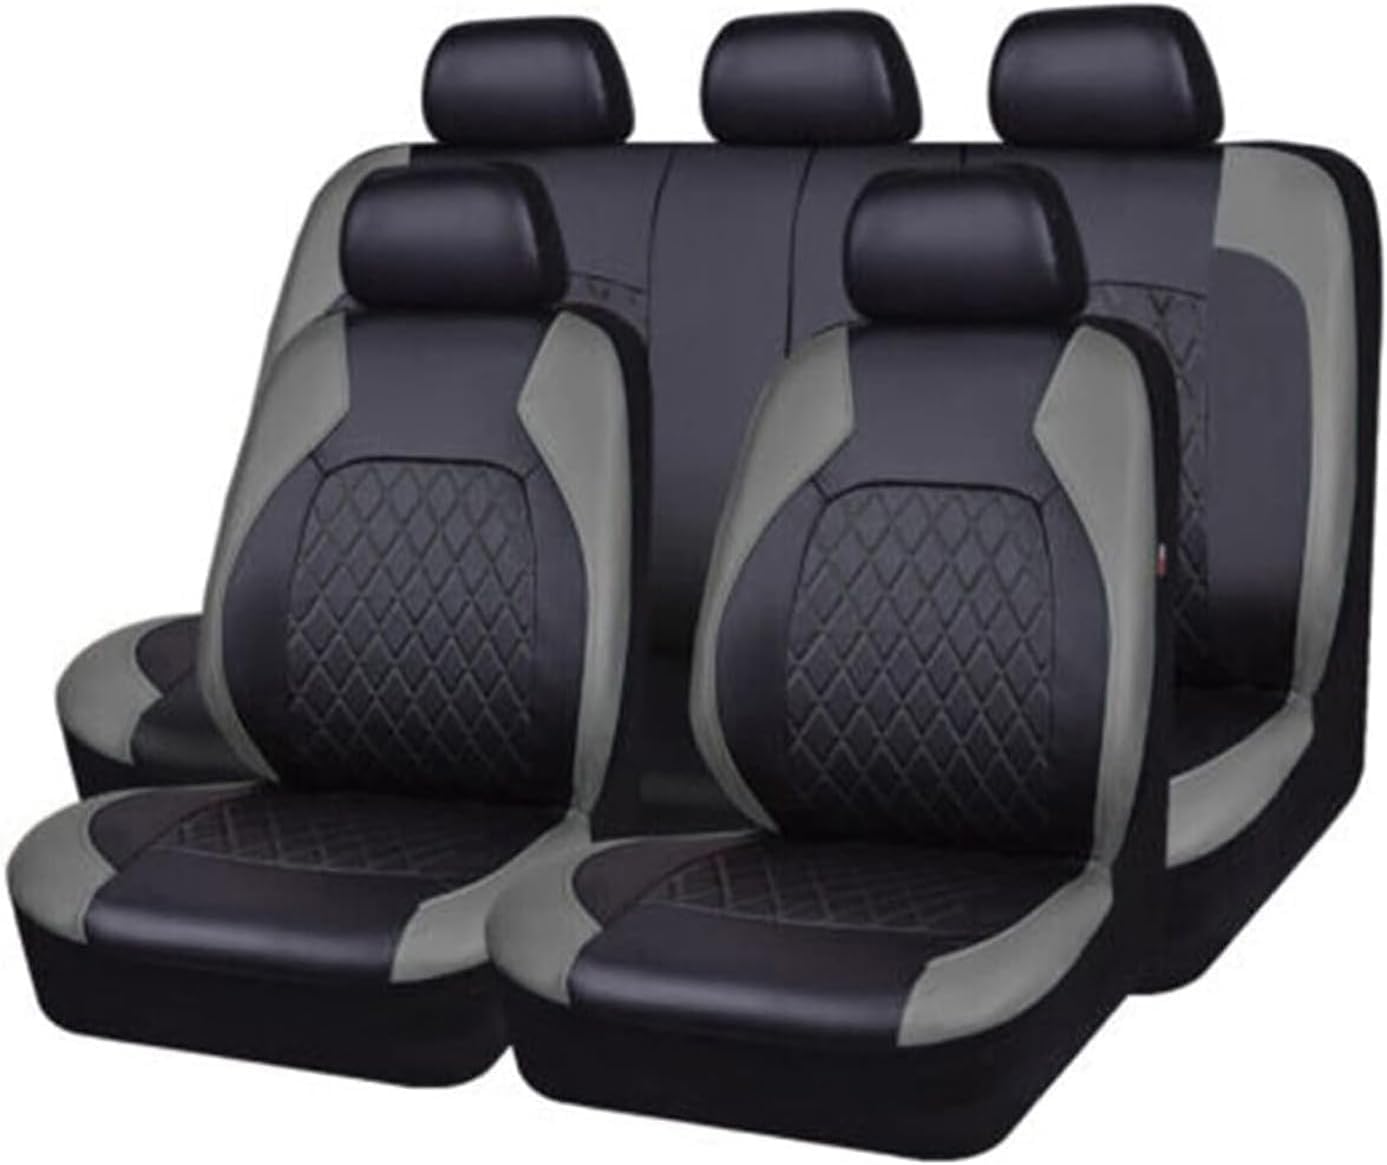 Auto Leder Sitzbezüge für Volvo Xc60 V50 V70 S60 S40 Xc70 C30 Xc90 S80, 9 Stück Allwetter rutschfest Wasserdicht Atmungsaktiv Schonbezug Set Sitzkissenschutz,B/Grey von SARCX